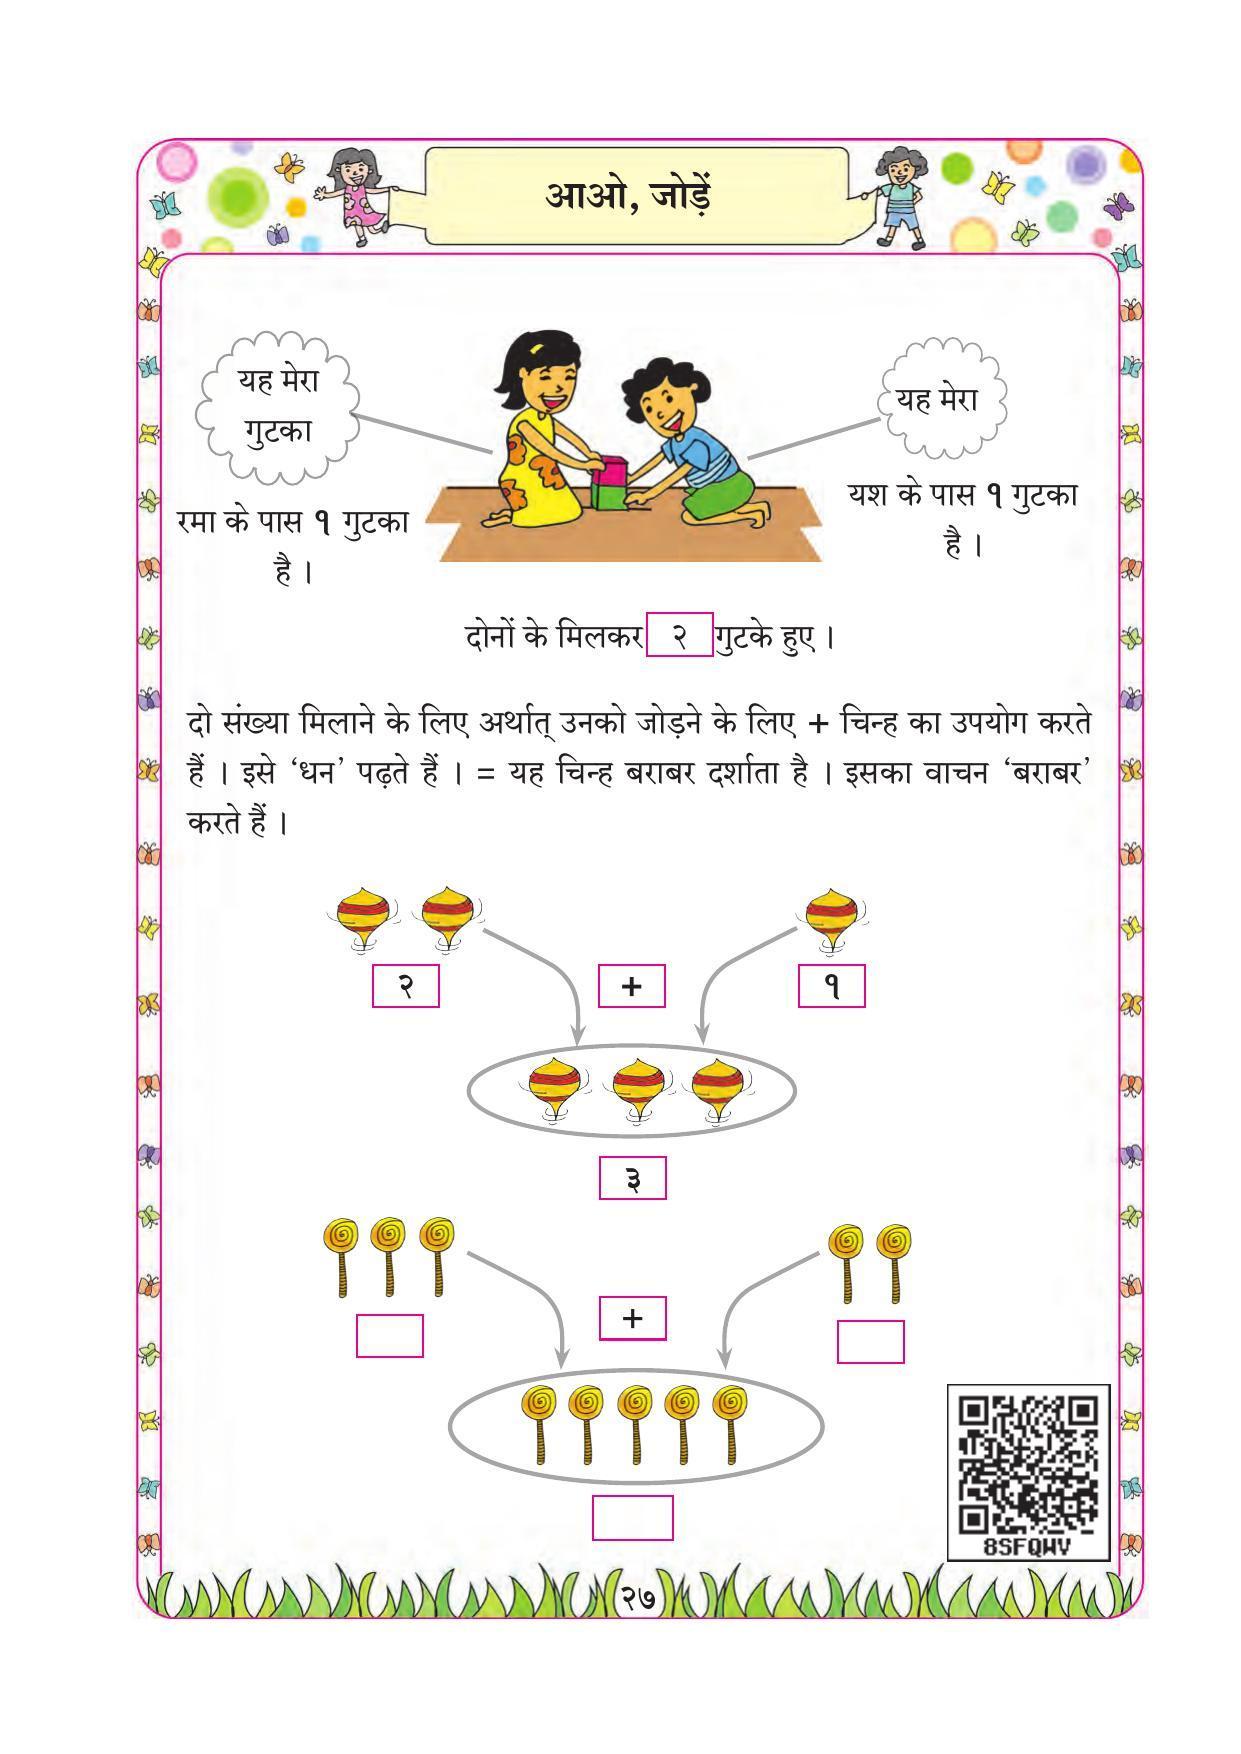 Maharashtra Board Class 1 Maths (Hindi Medium) Textbook - Page 37